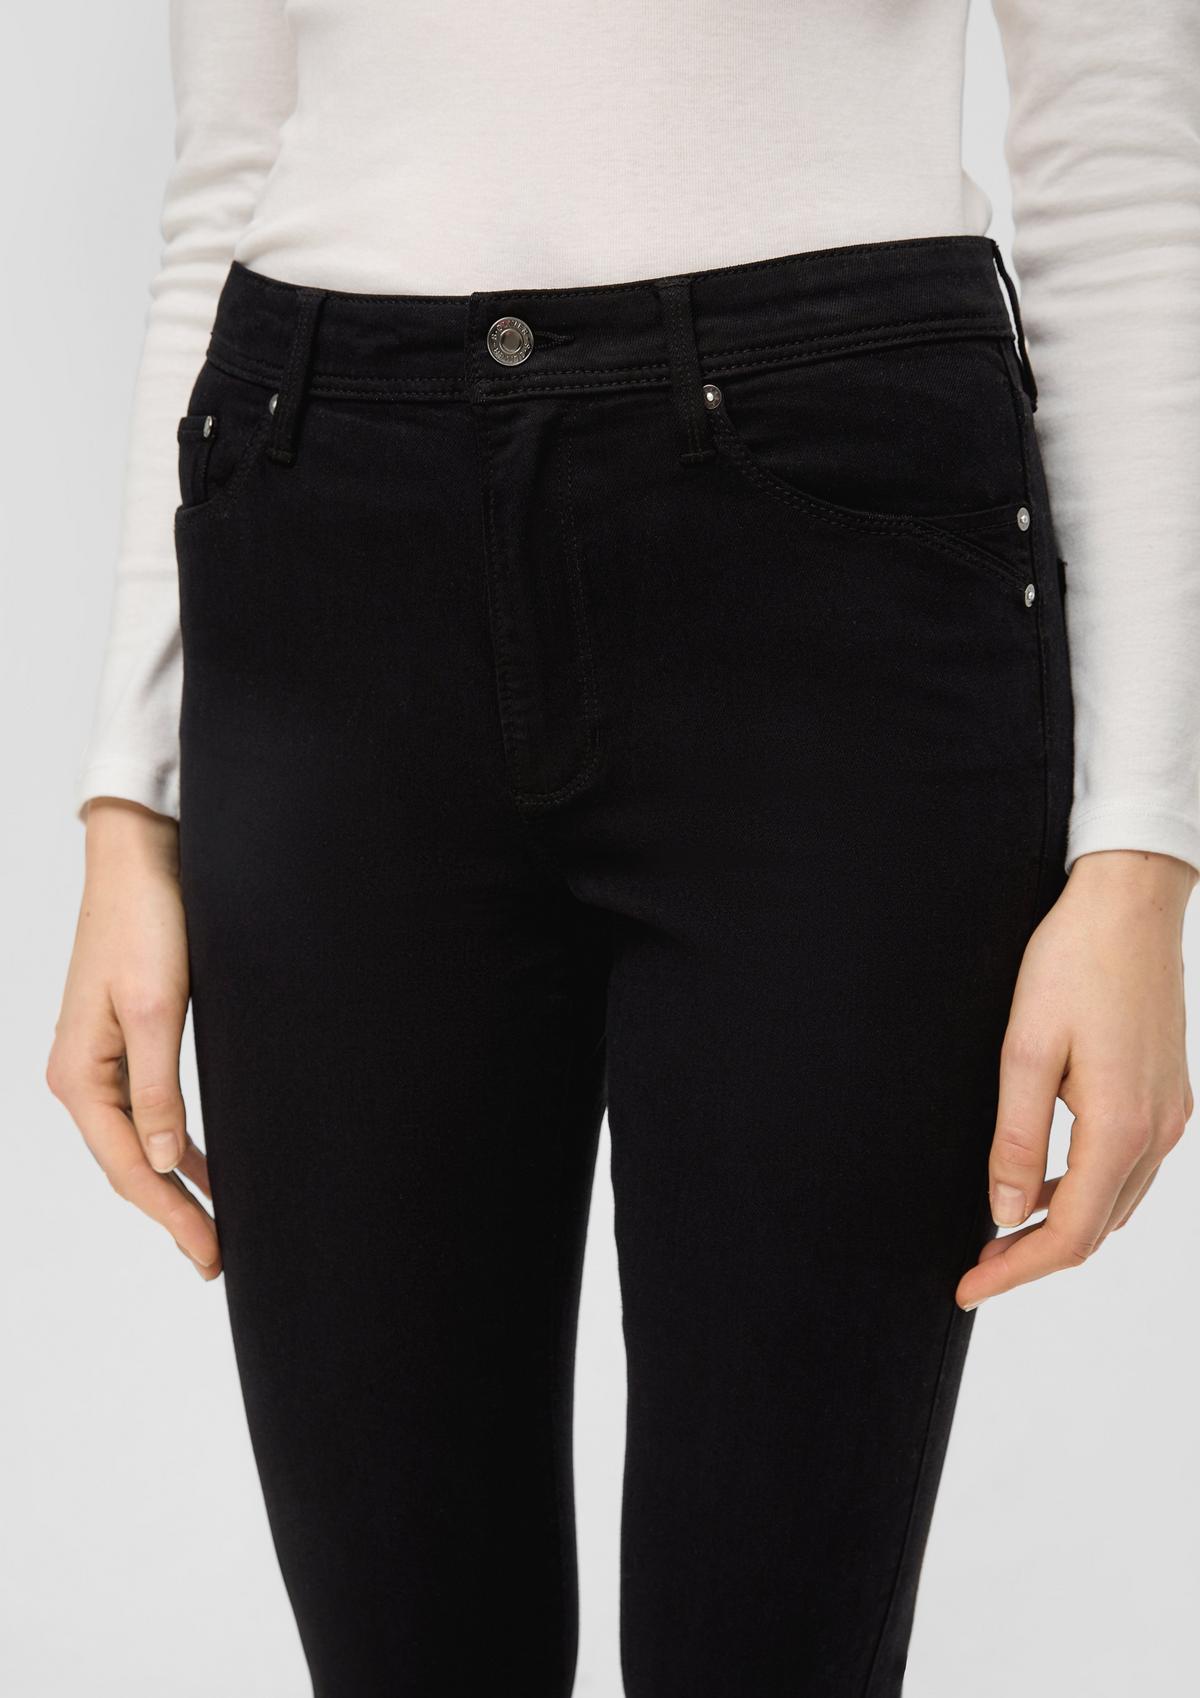 s.Oliver Jeans hlače Betsy kroj Slim Fit / Mid Rise / kroj Bootcut